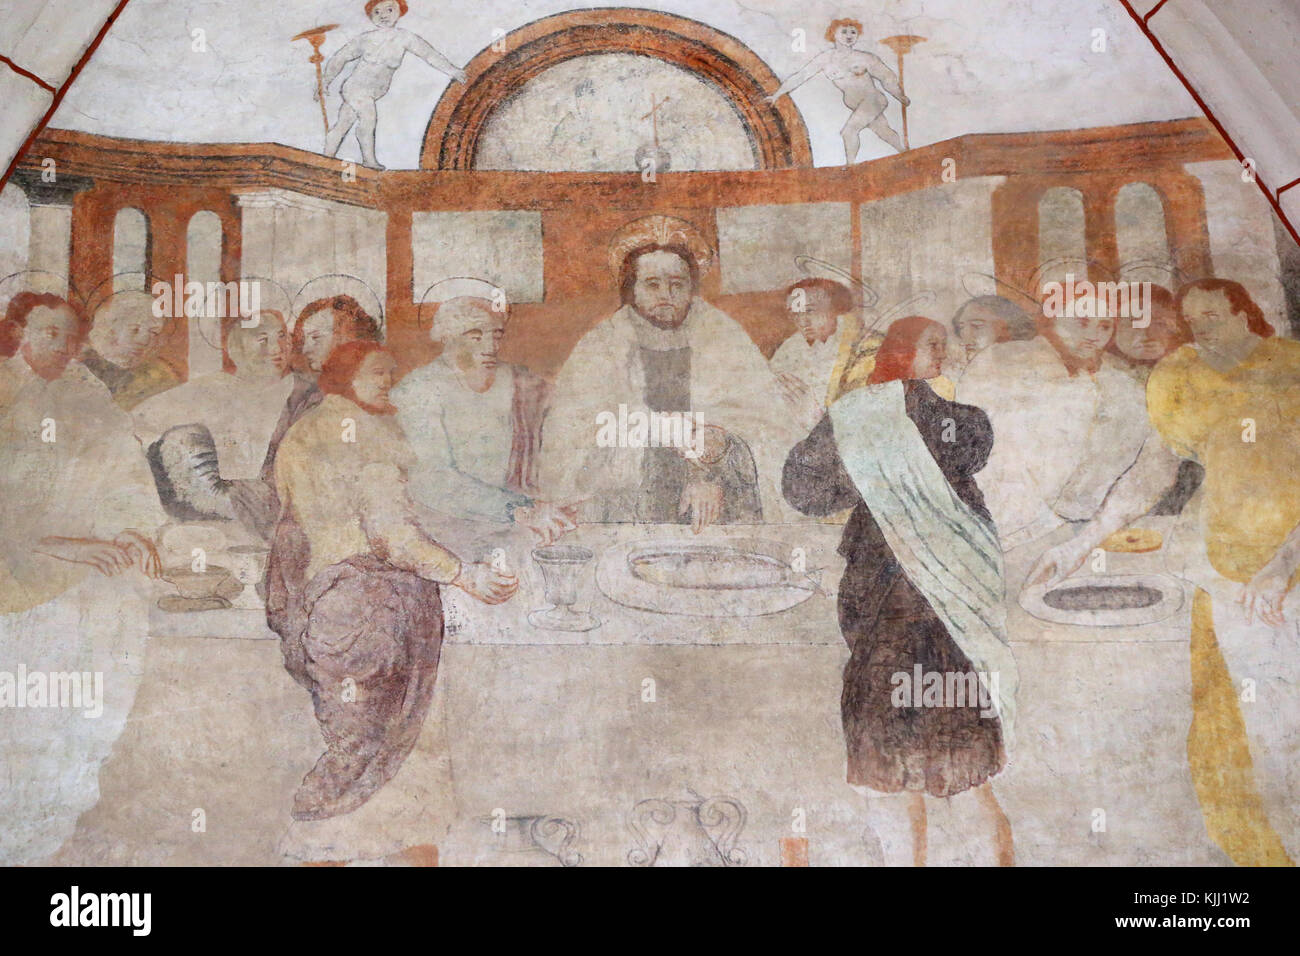 Vault de Lugny Kirche. Wandmalerei aus dem 16. Jahrhundert. Christus in seinem Leiden. Das letzte Abendmahl von Jesus und seinen Jüngern geteilt. Frankreich. Stockfoto